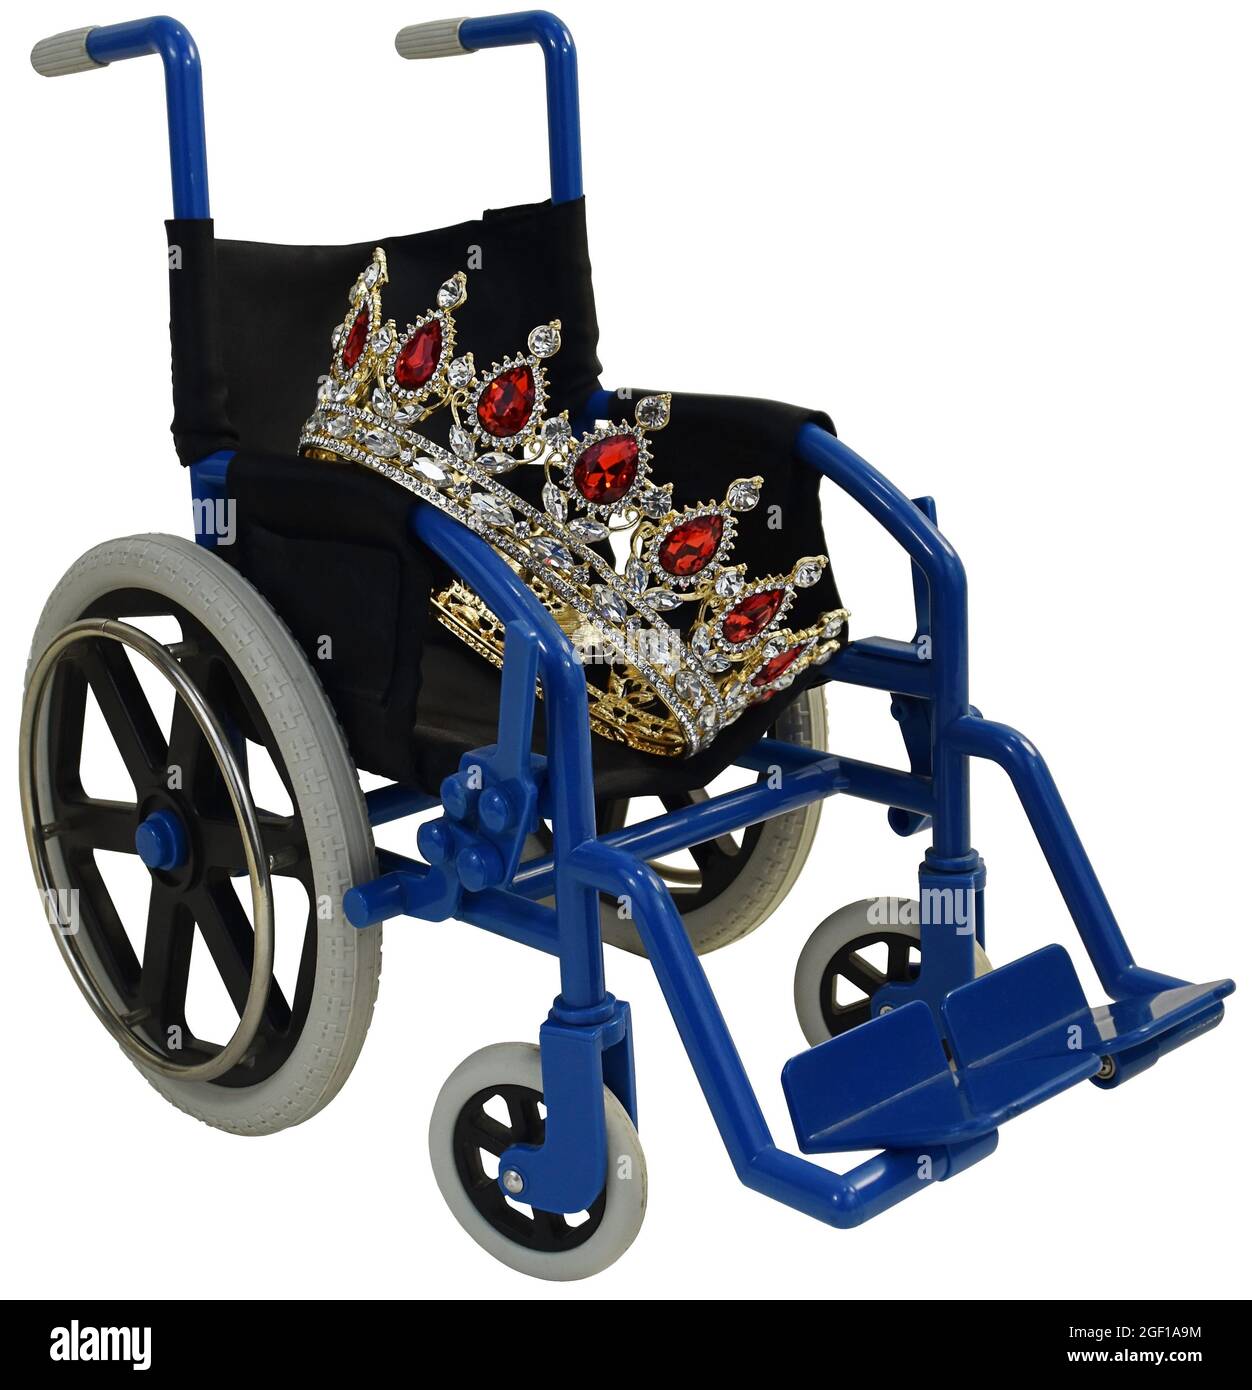 Corona di gioielli seduta su una sedia a rotelle blu che mostra il trattamento regale Foto Stock